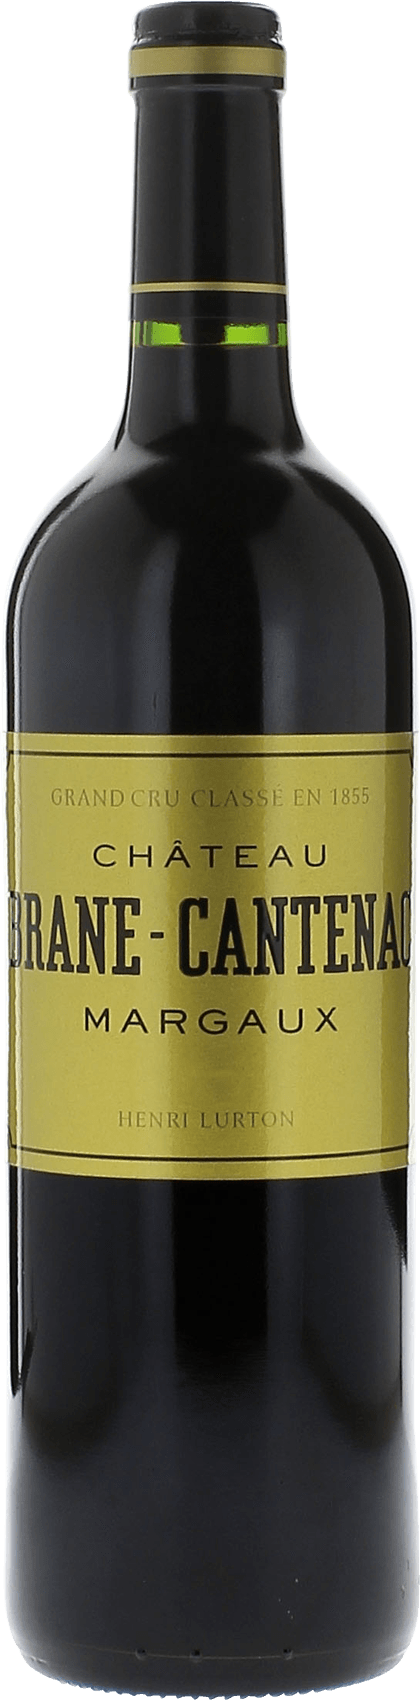 Brane cantenac 2001 2me Grand cru class Margaux, Bordeaux rouge